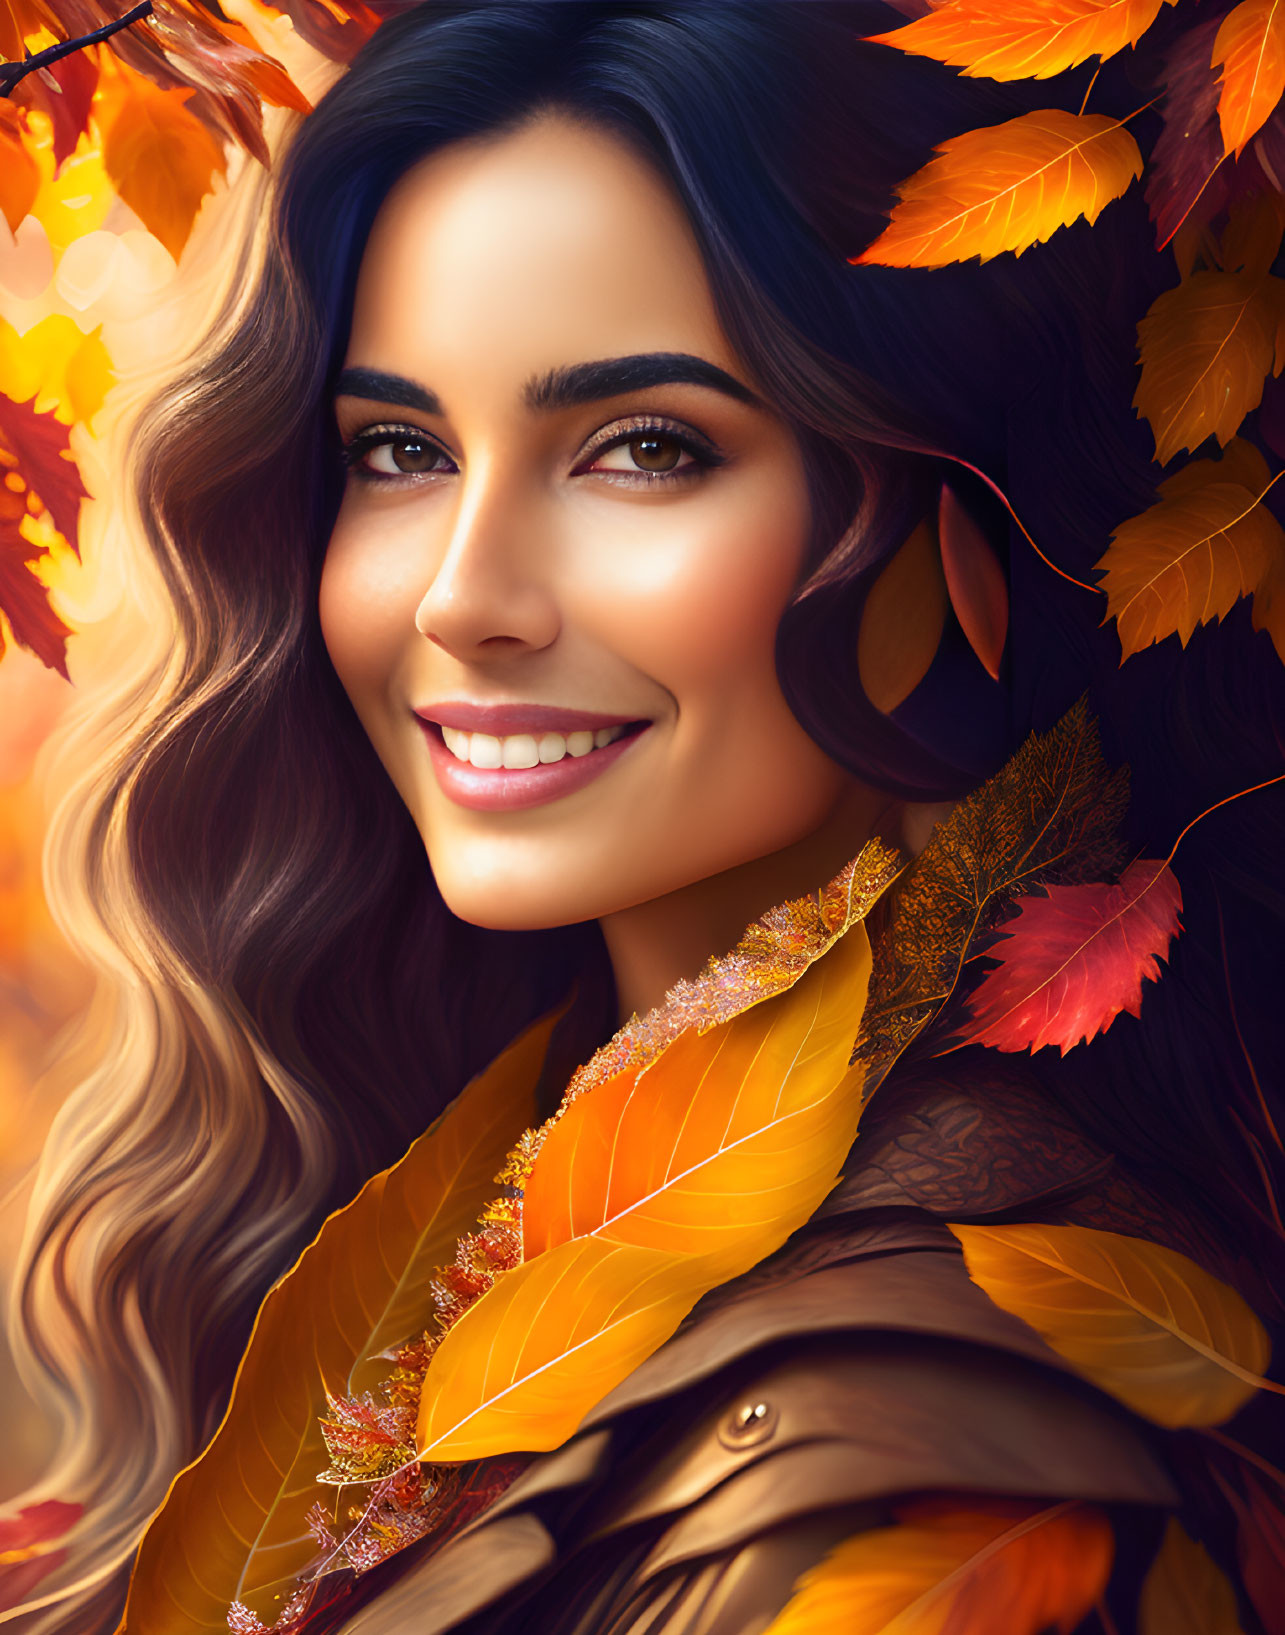 Mezmerize woman in autumn